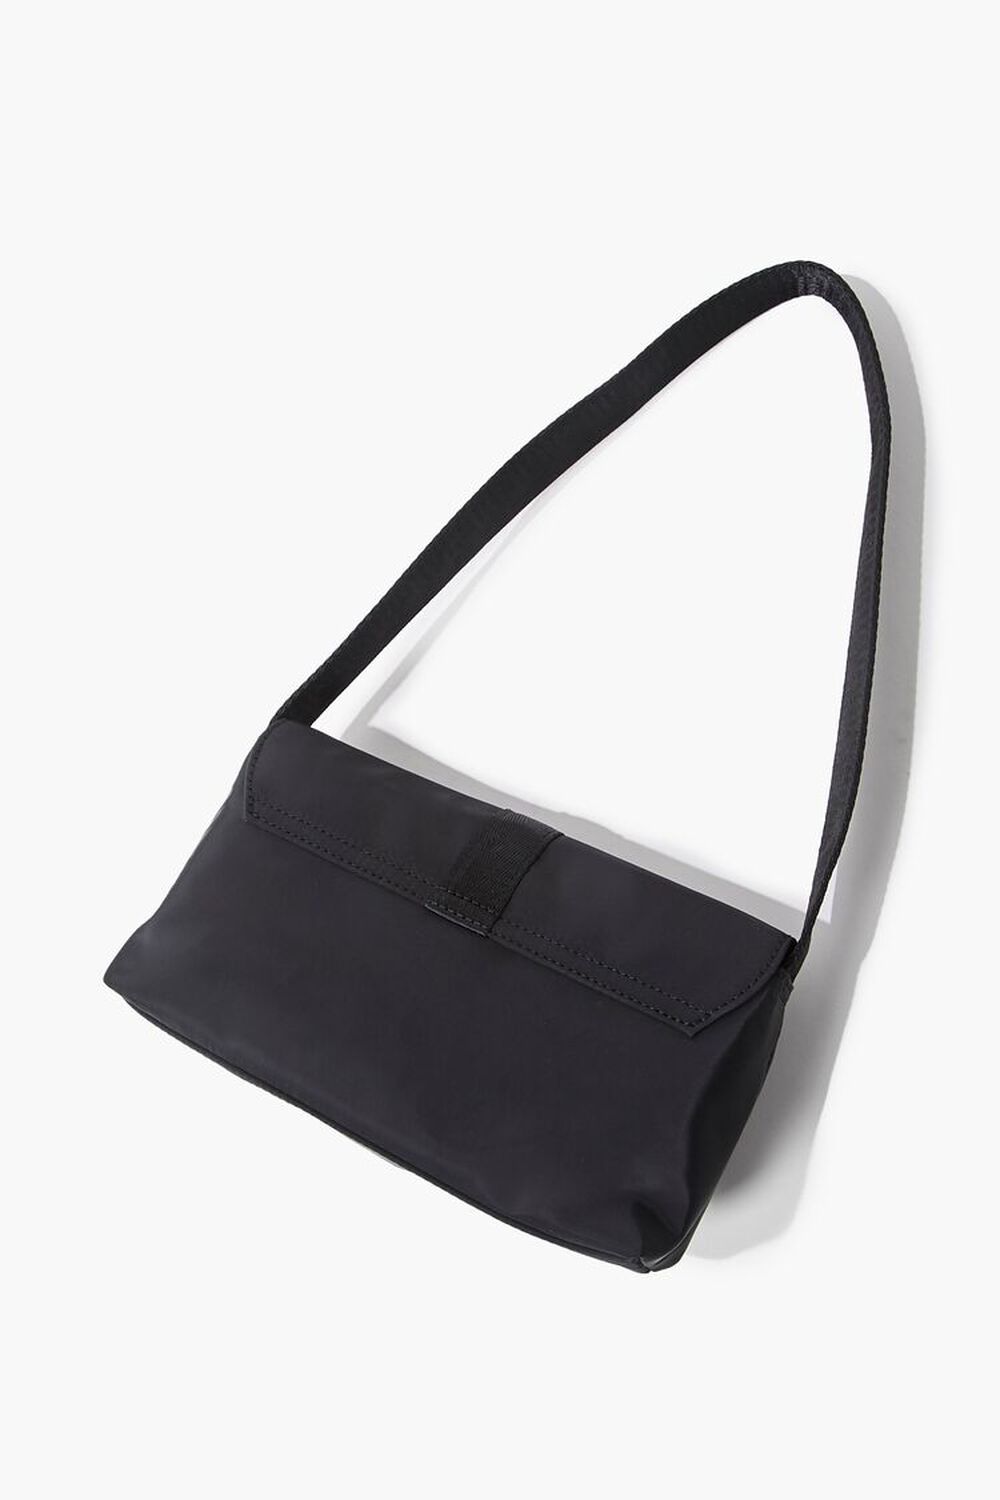 Release-Buckle Shoulder Bag, image 2